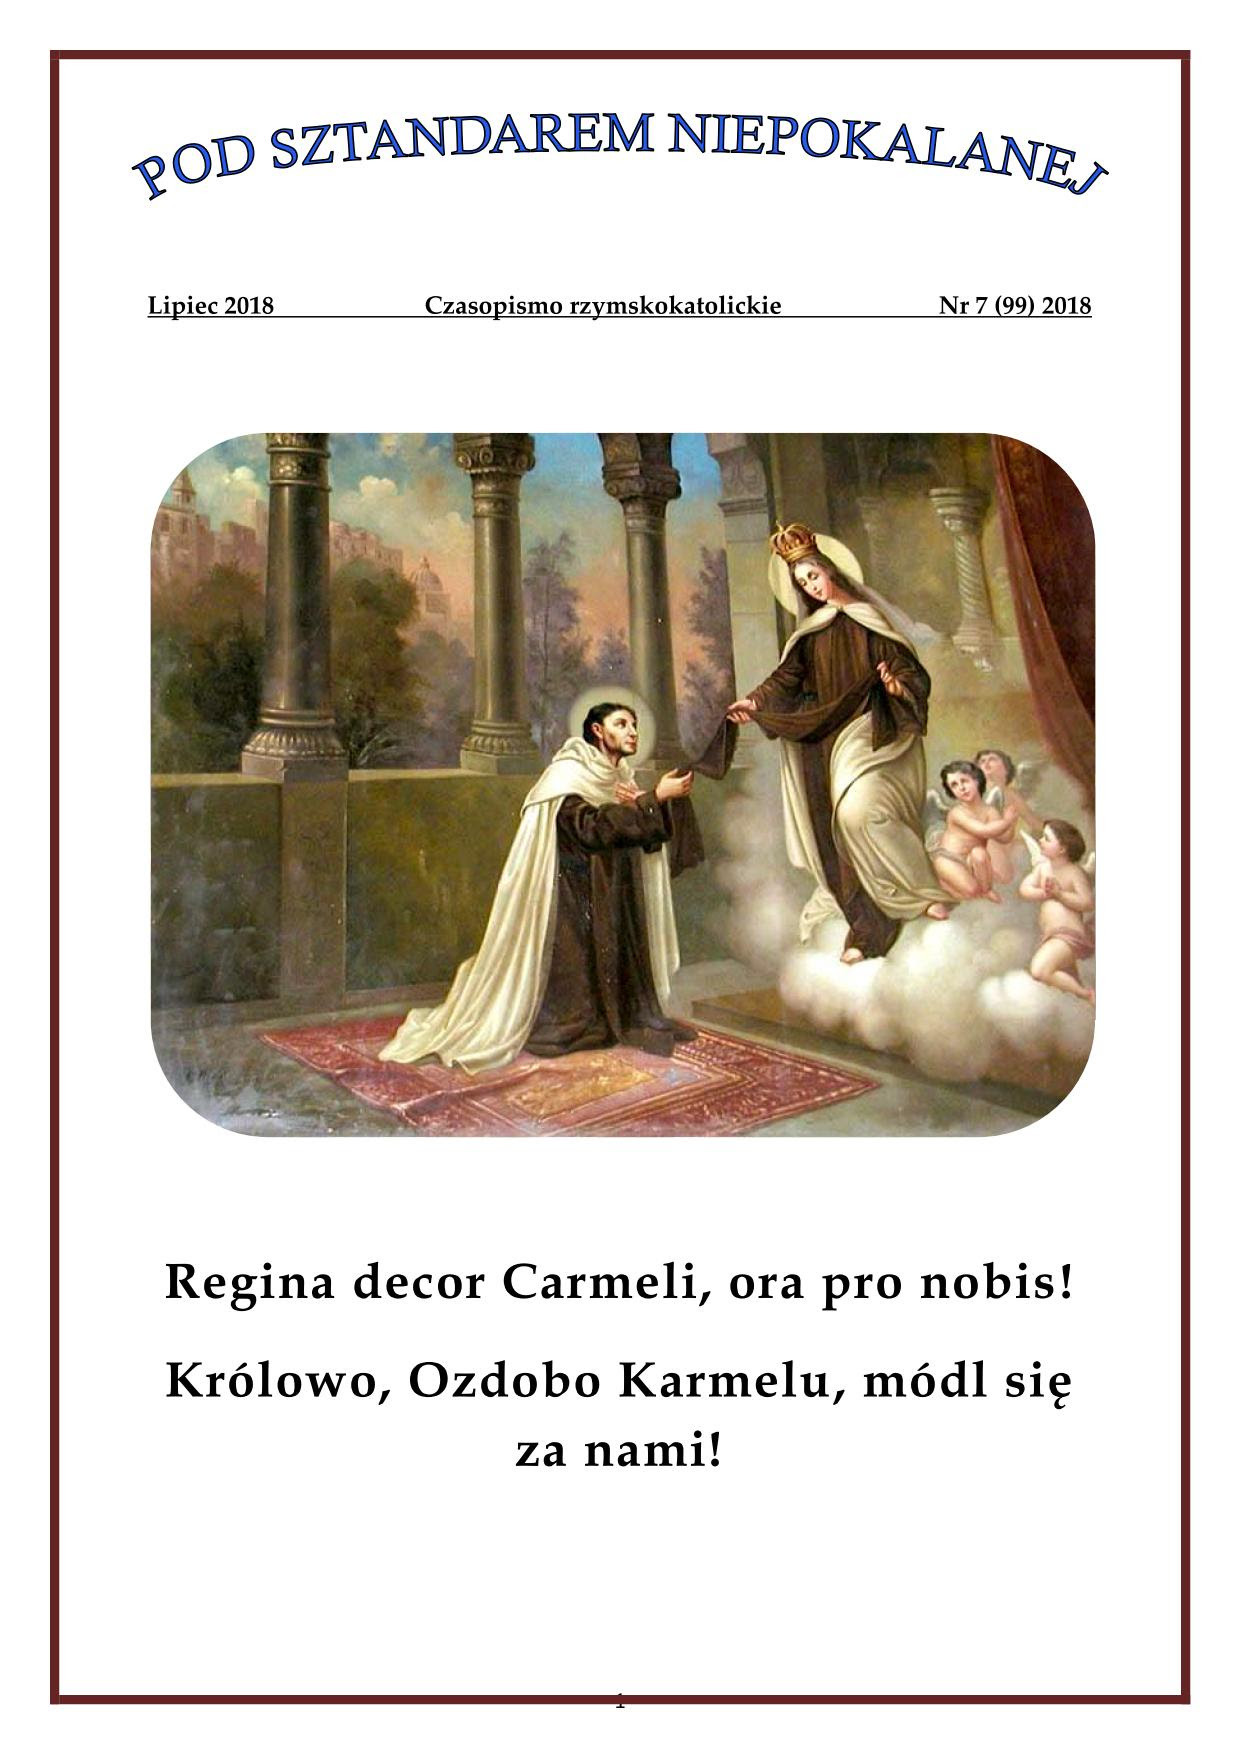 "Pod sztandarem Niepokalanej". Nr 99. Lipiec 2018. Czasopismo rzymskokatolickie.